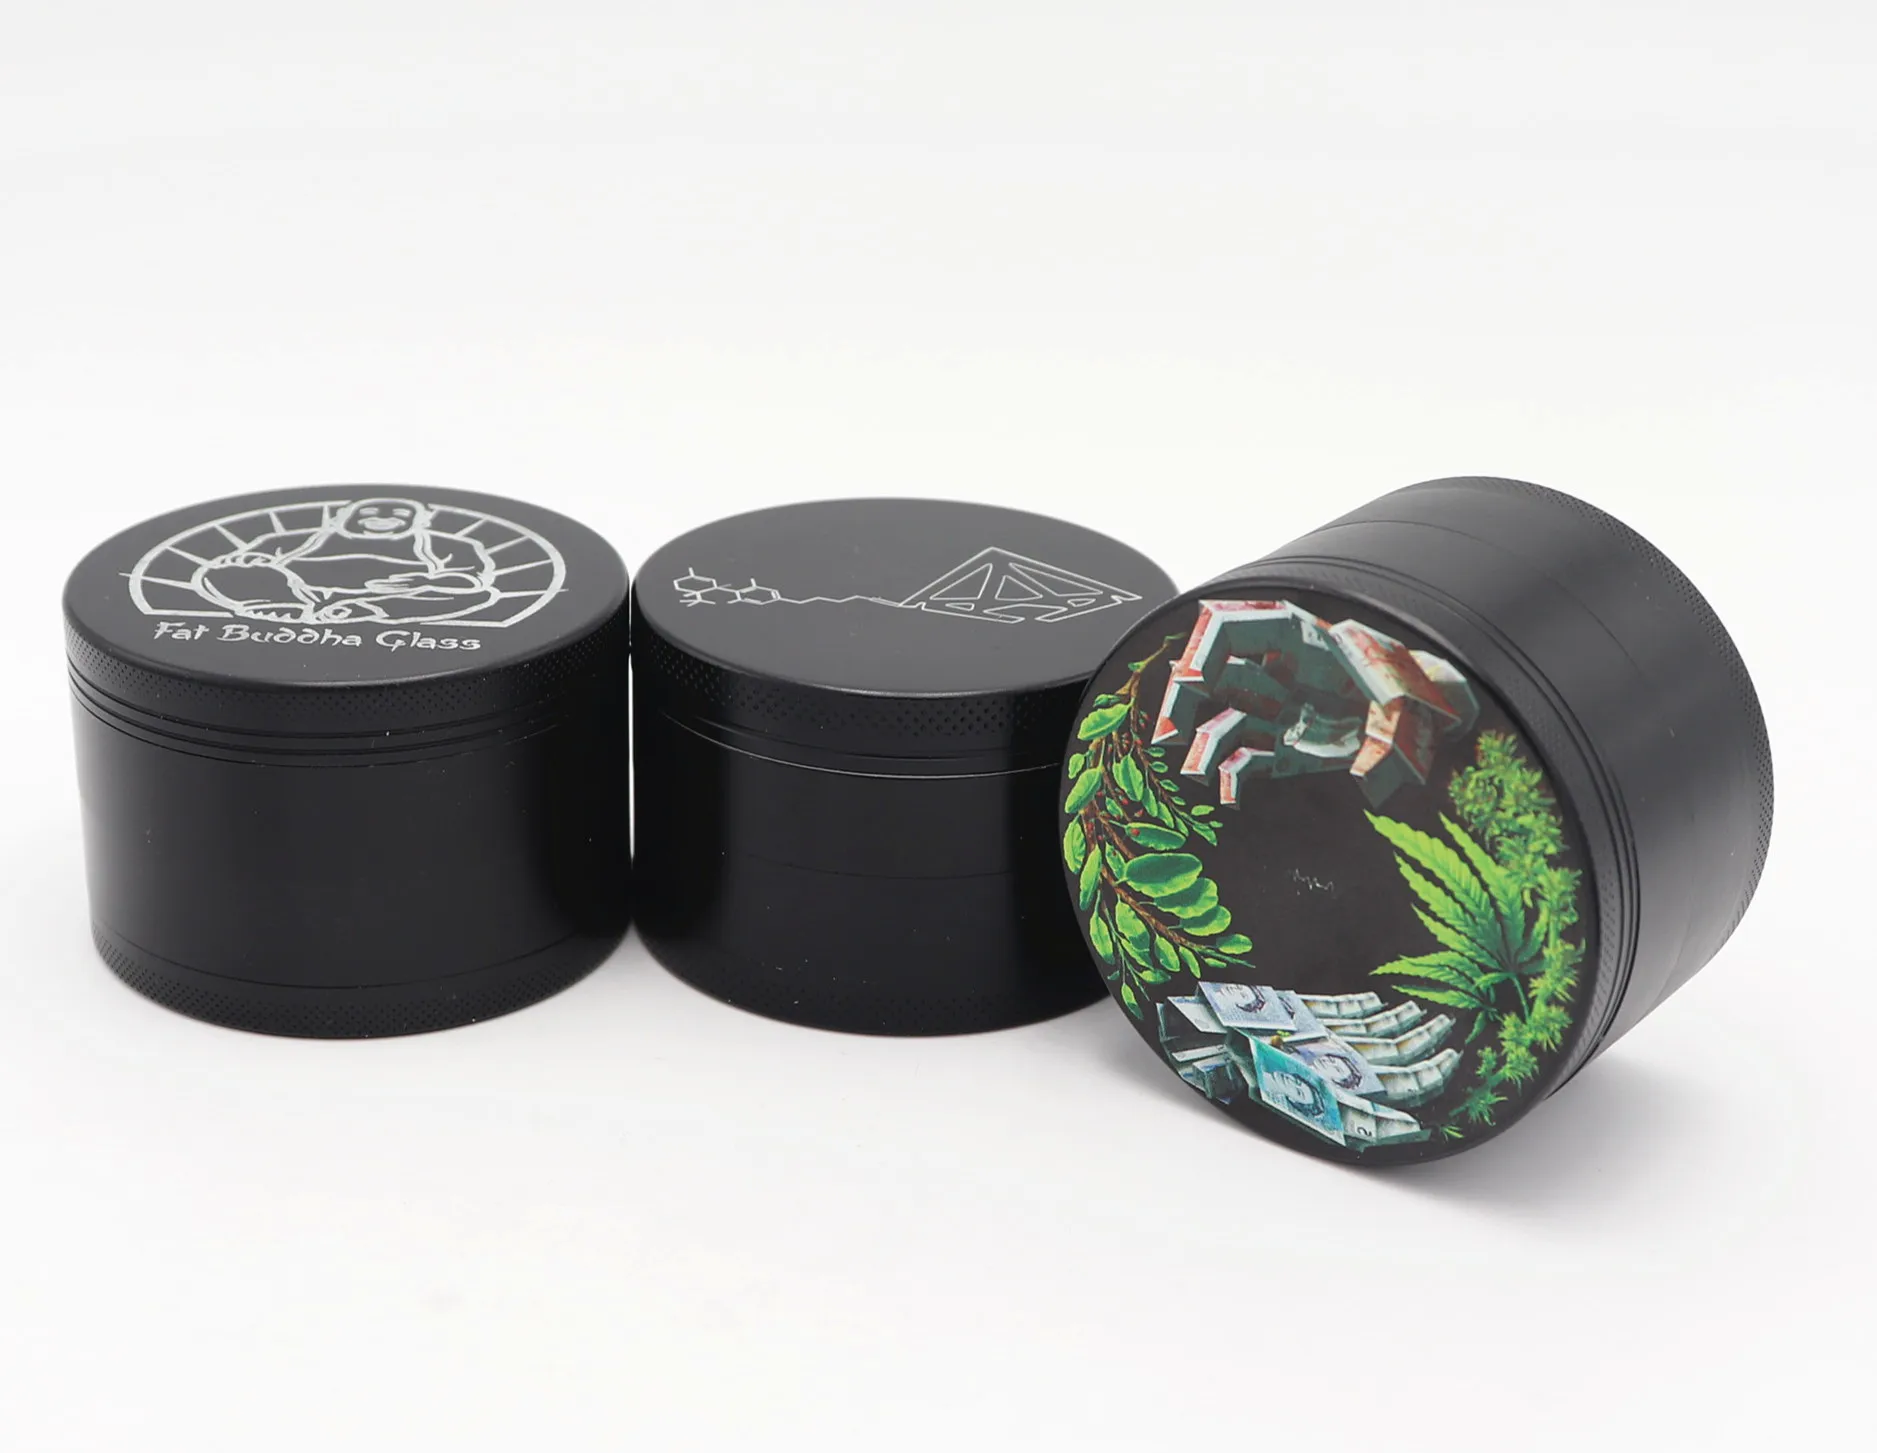 

hotsale custom logo Excellent high quality black herb grinder zinc grinder 2021Fashion design 55mm grinder, Mix colors